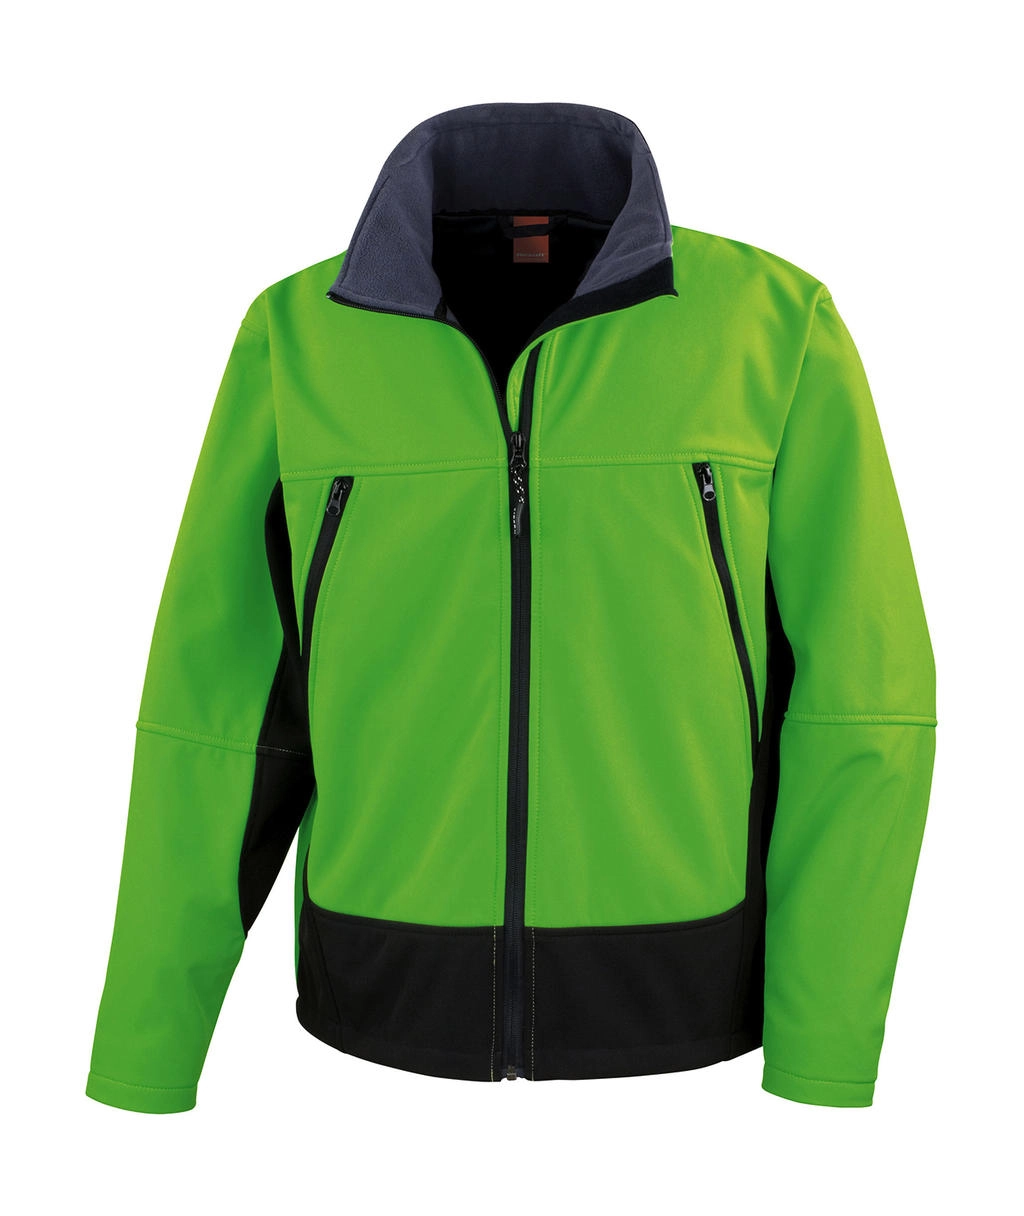 Softshell Activity Jacket zum Besticken und Bedrucken in der Farbe Vivid Green/Black mit Ihren Logo, Schriftzug oder Motiv.